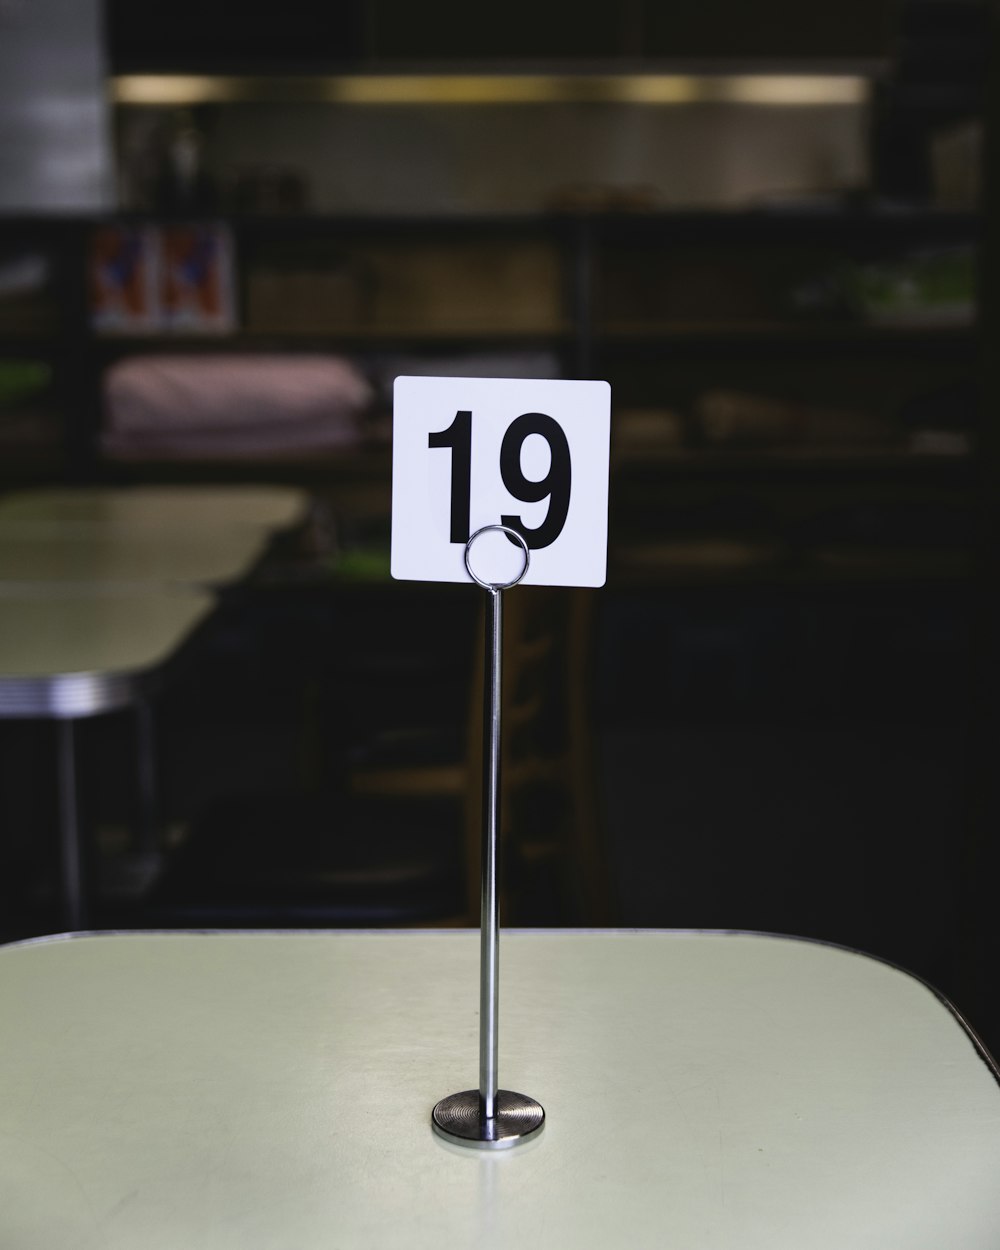 Table numéro 19 sur la table à l’intérieur de la pièce